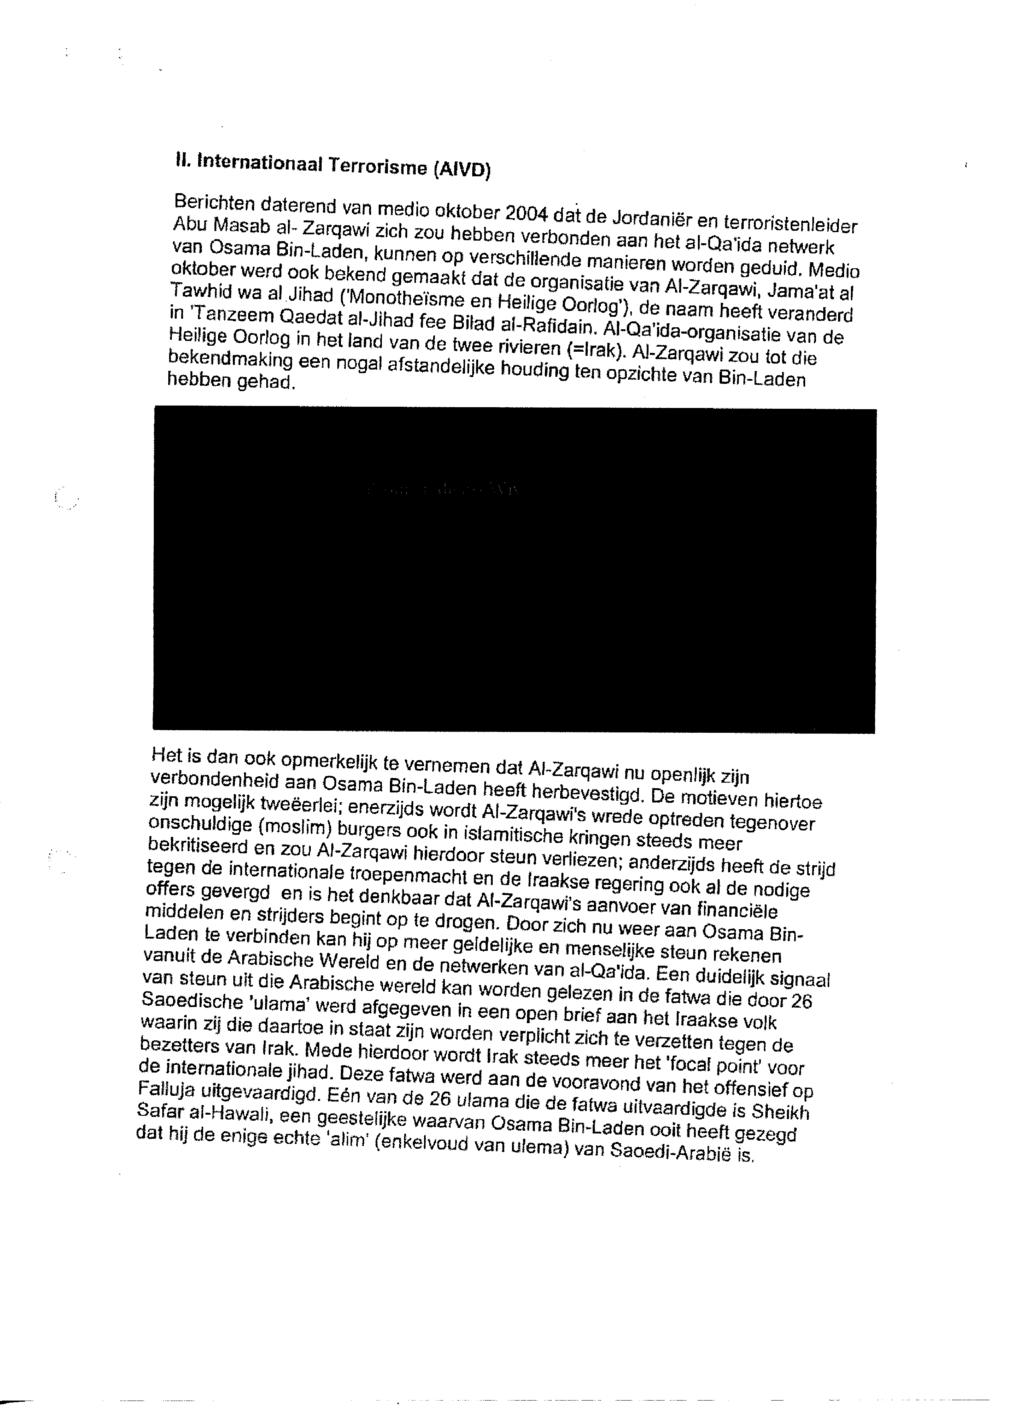 N. Internationaal Terrorisme (AiVD) Berichten daterend van medio oktober 2004 dat de Jordaniër en terroristenleider Abu Masab al- Zarqawi zich zou hebben verbonden aan het al-qa'ida netwerk van Qsama